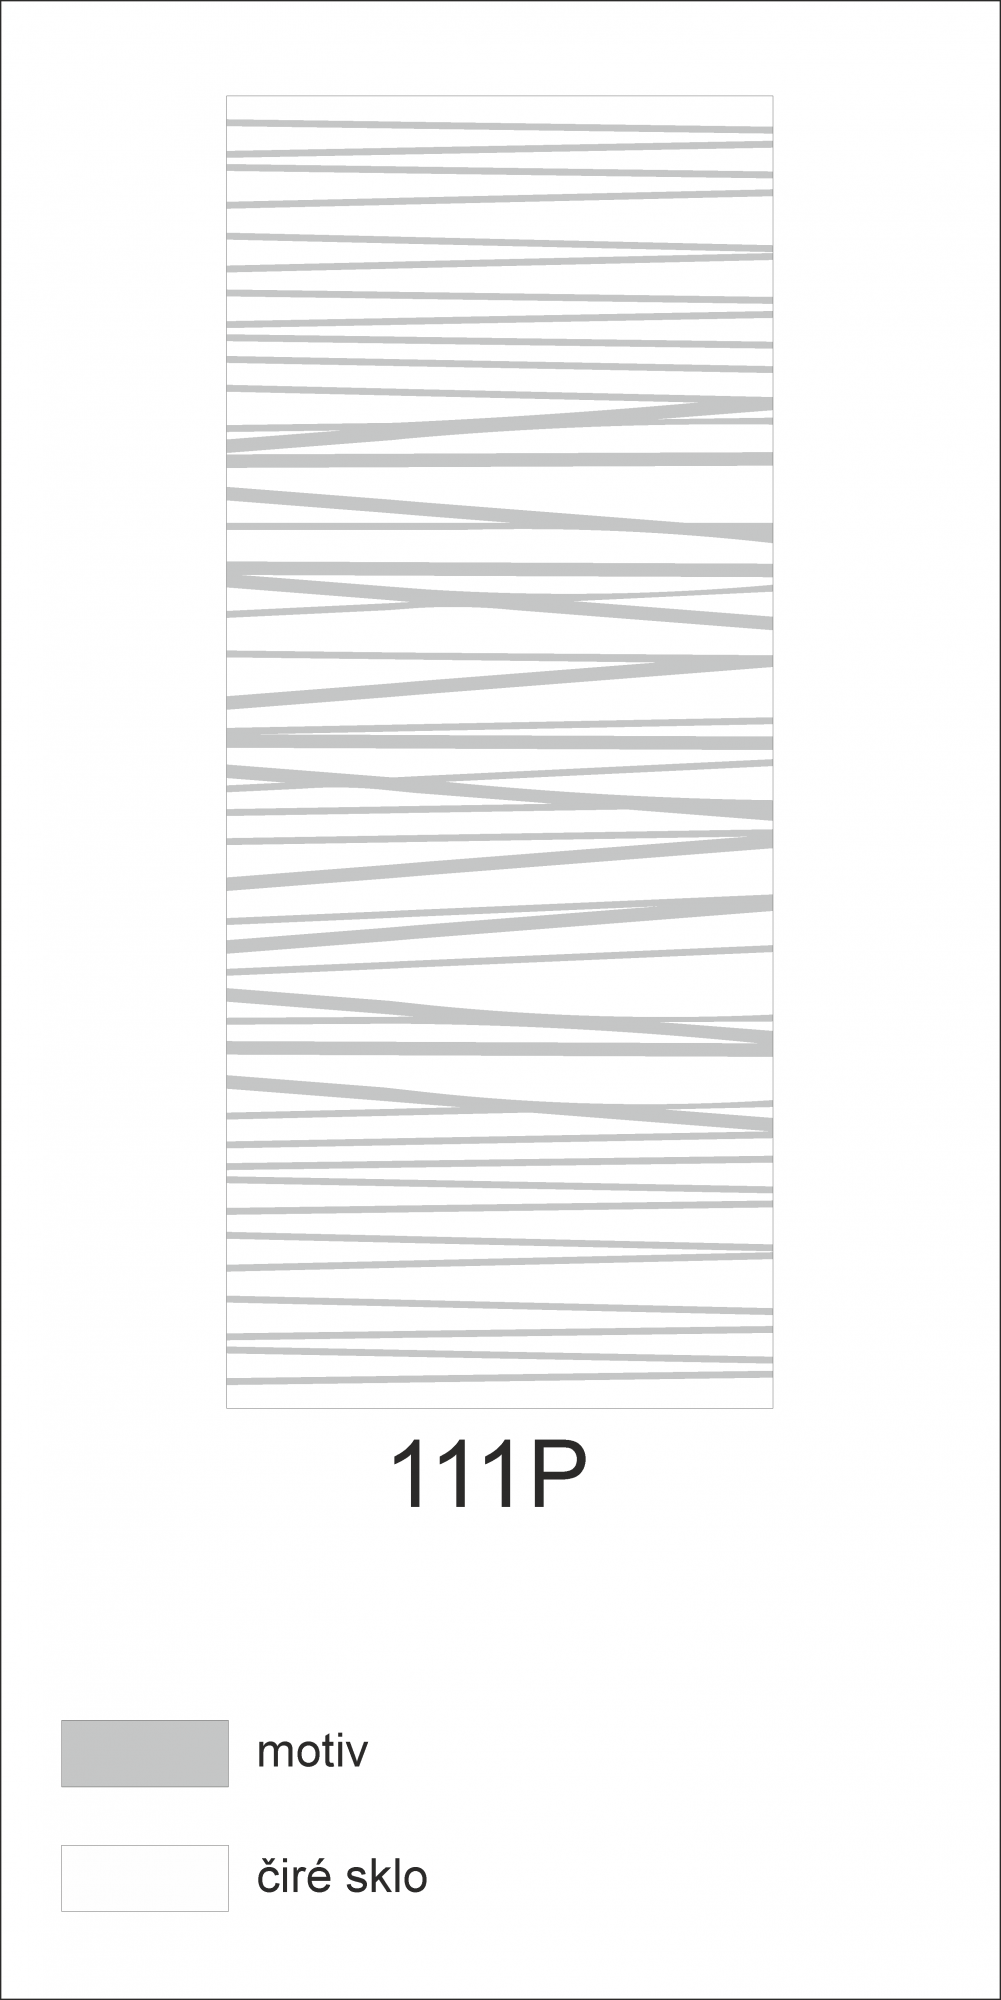 Možný motiv na skleněných dveřích nebo skleněných stěnách 111P - horizontální čáry